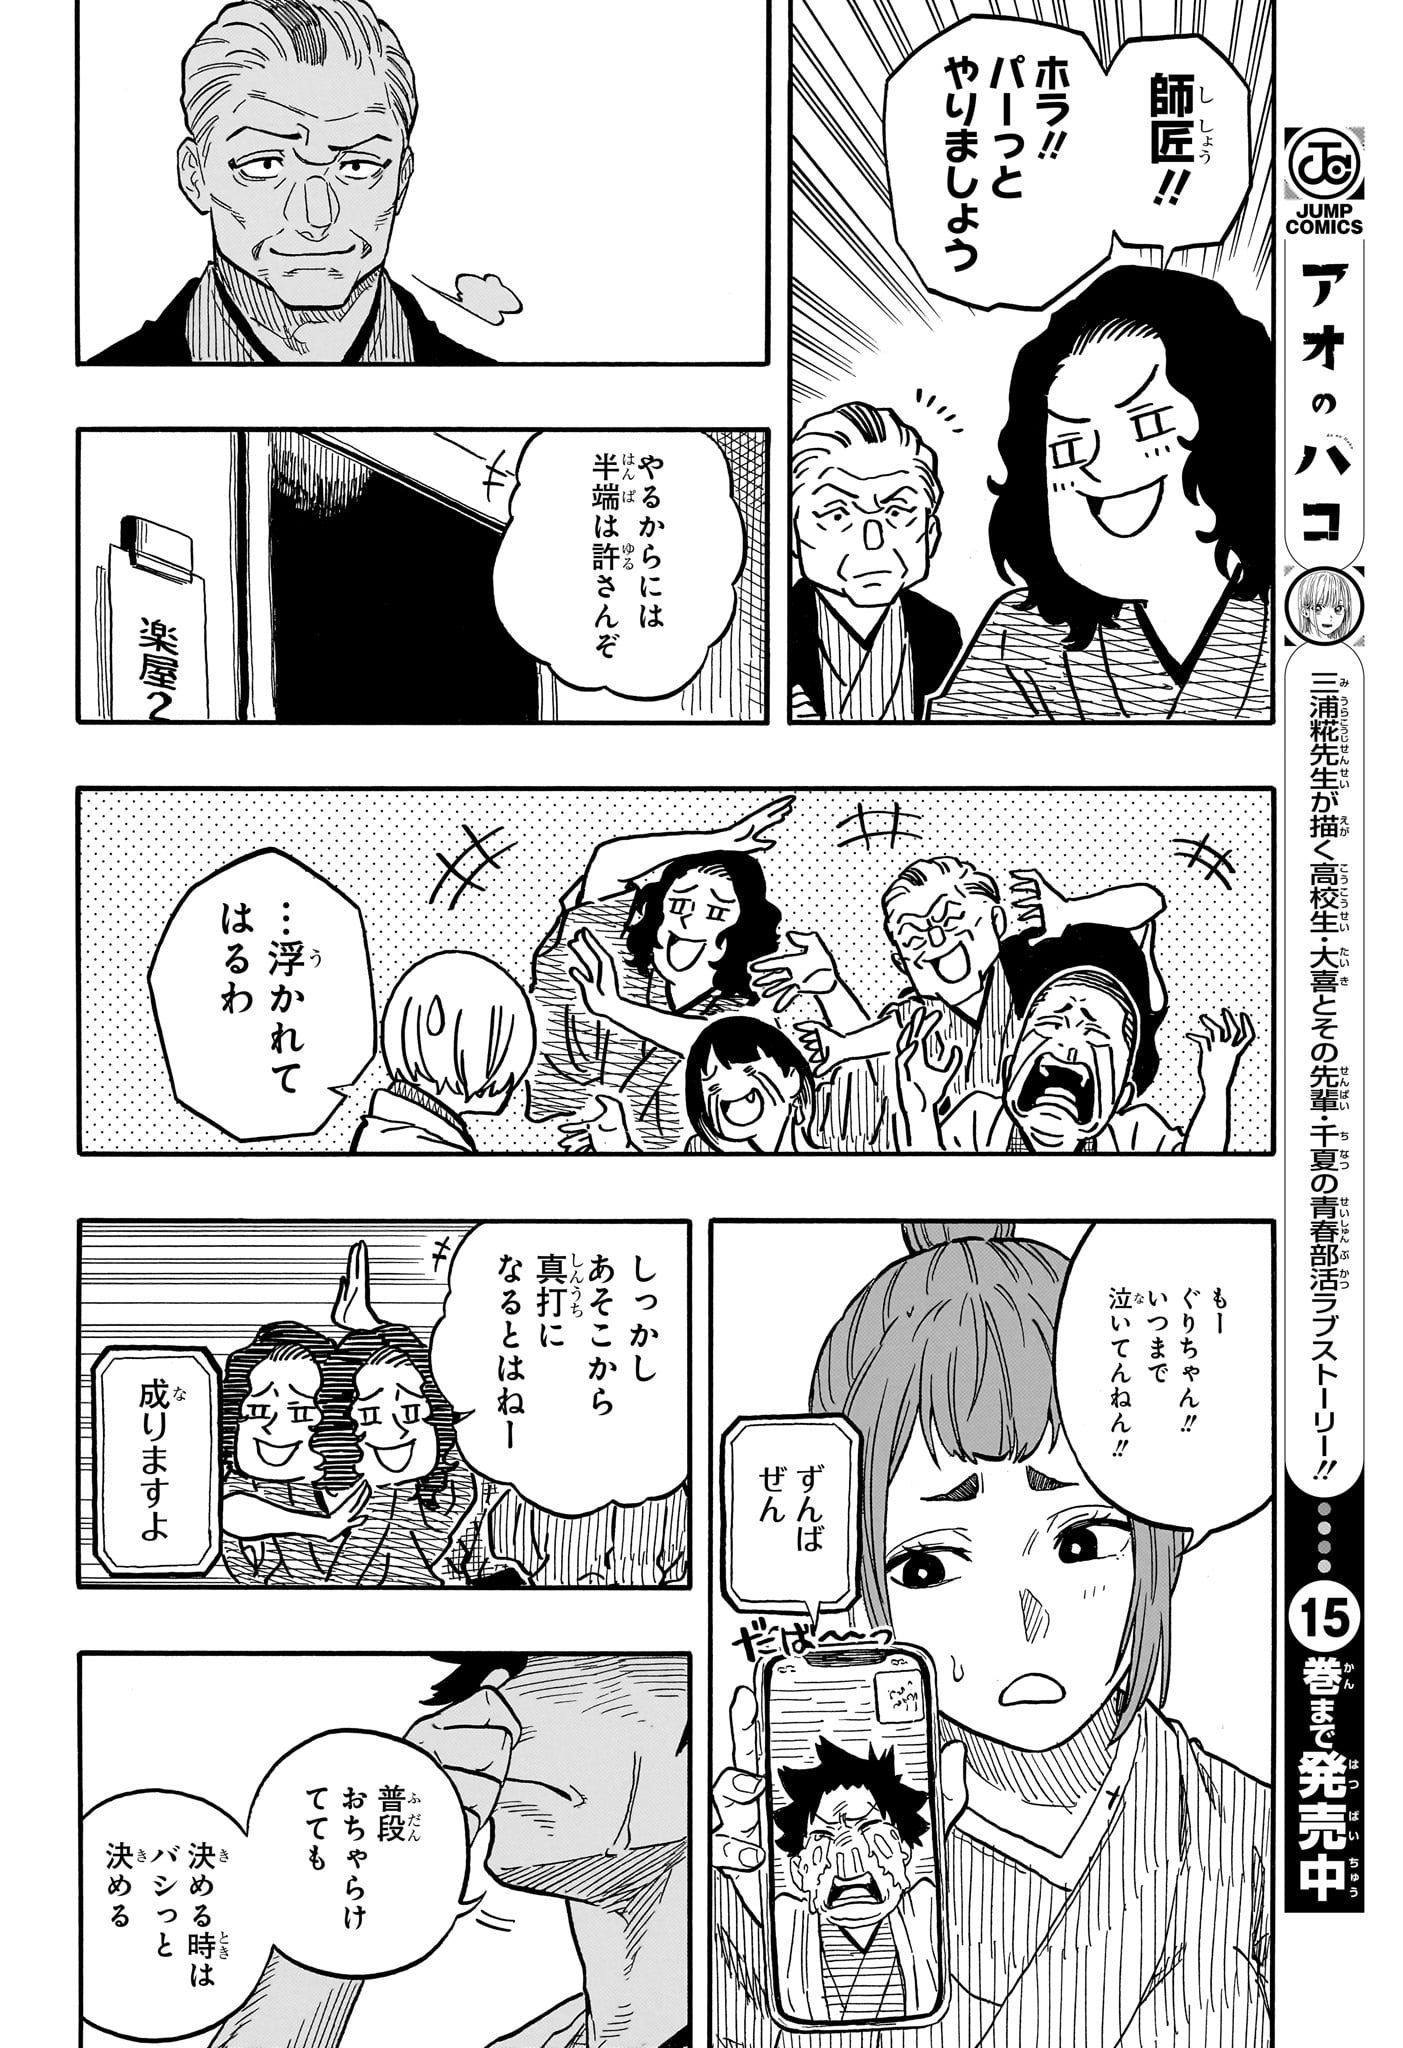 Akane-Banashi - Chapter 117 - Page 8